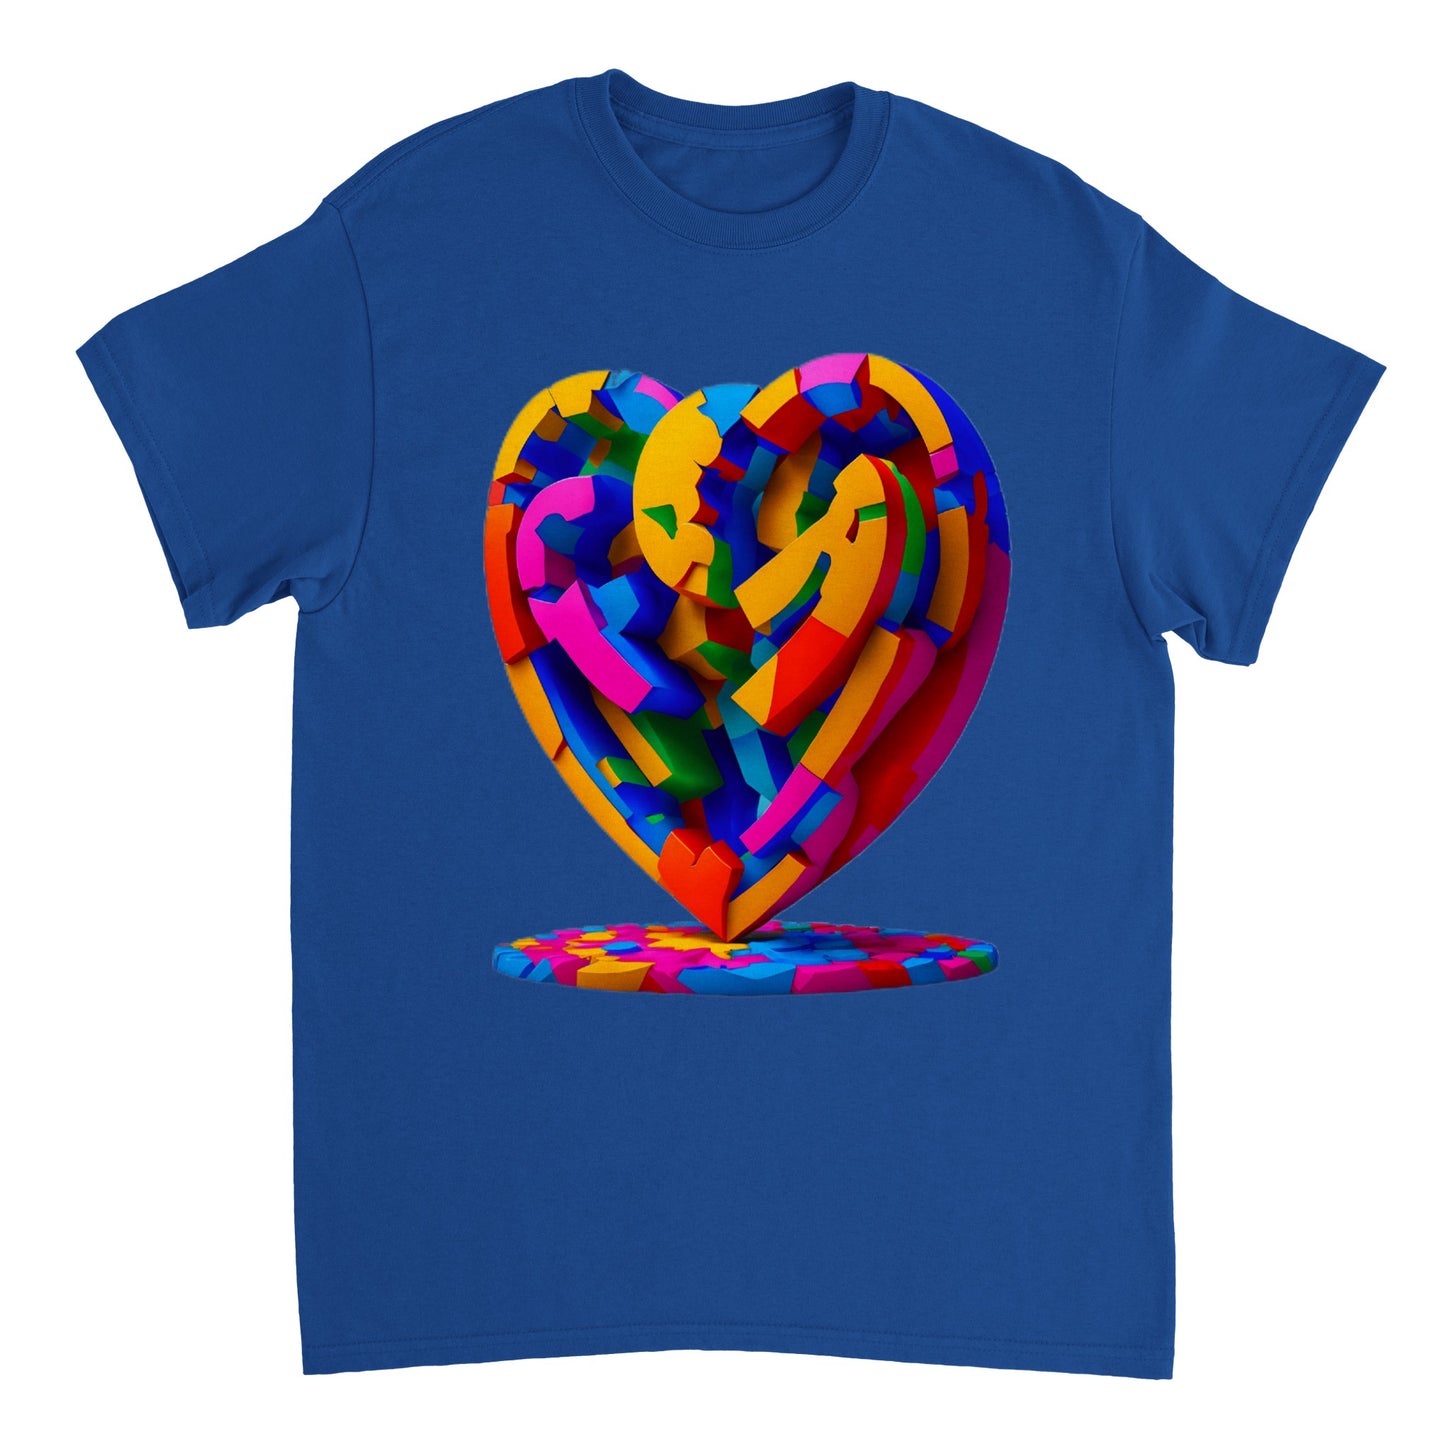 Love Heart - Heavyweight Unisex Crewneck T-shirt 14